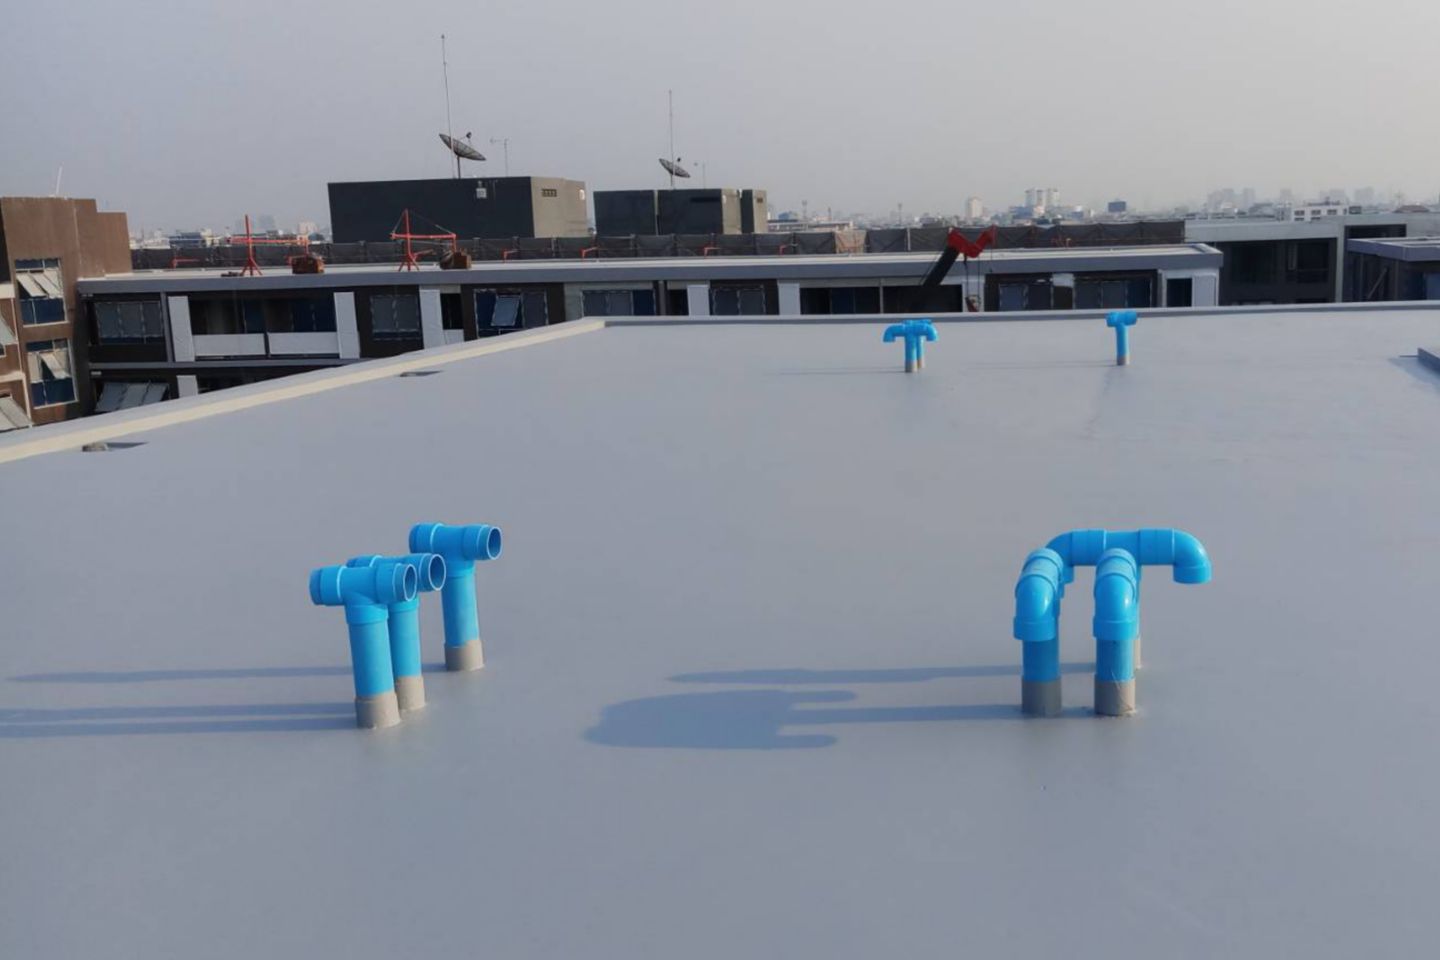 Atmoz Condominium using Sika LAM solution for concrete roof